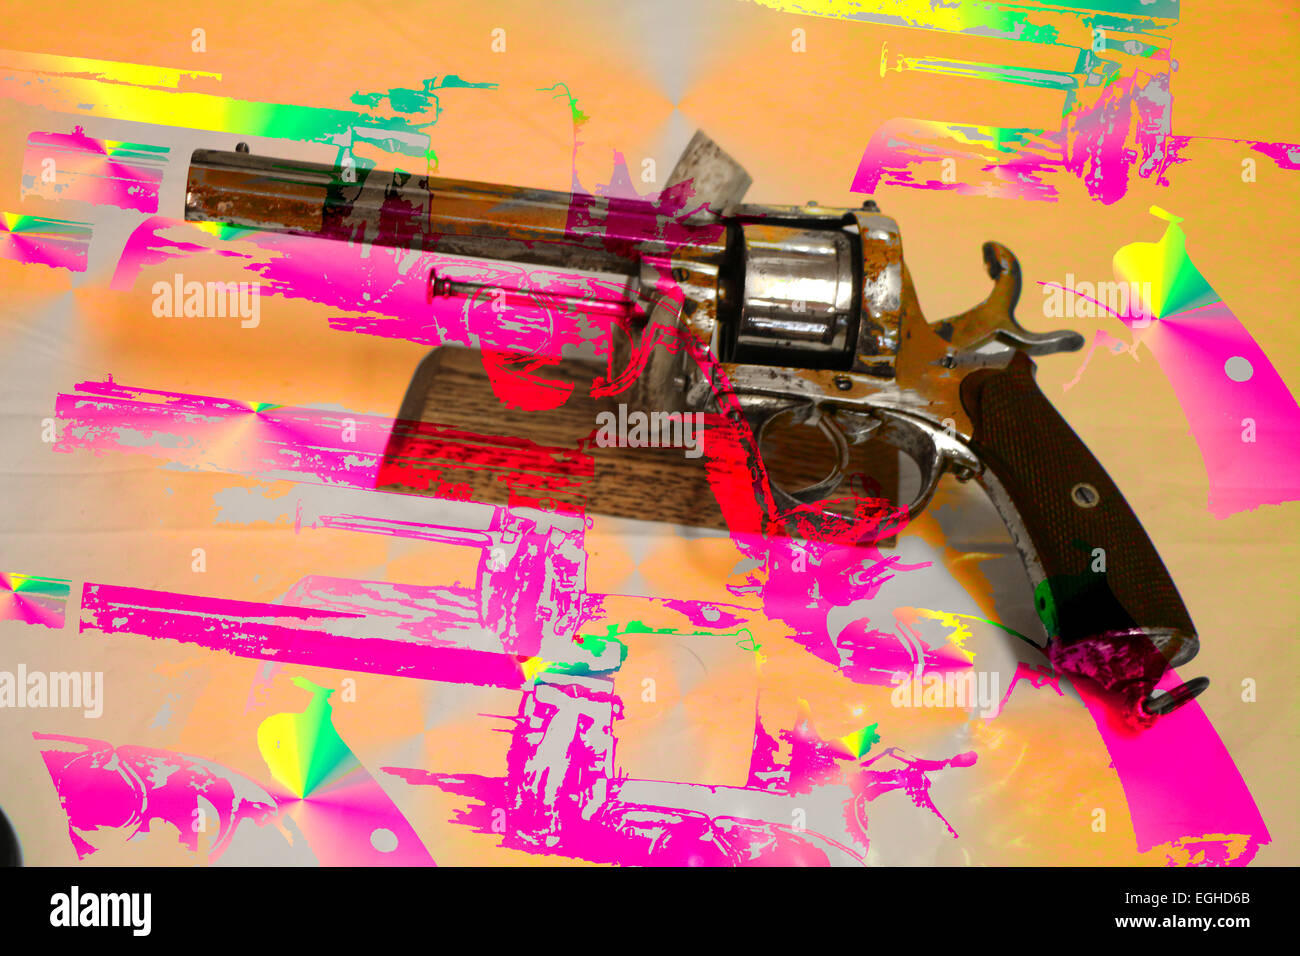 architektonisches Detail Hintergrund Waffen Nahaufnahme Farbe Bild digital zusammengesetzte Dämmerung vorgestellten Pistole Pistolen horizontale ein lila Rauchen Stockfoto